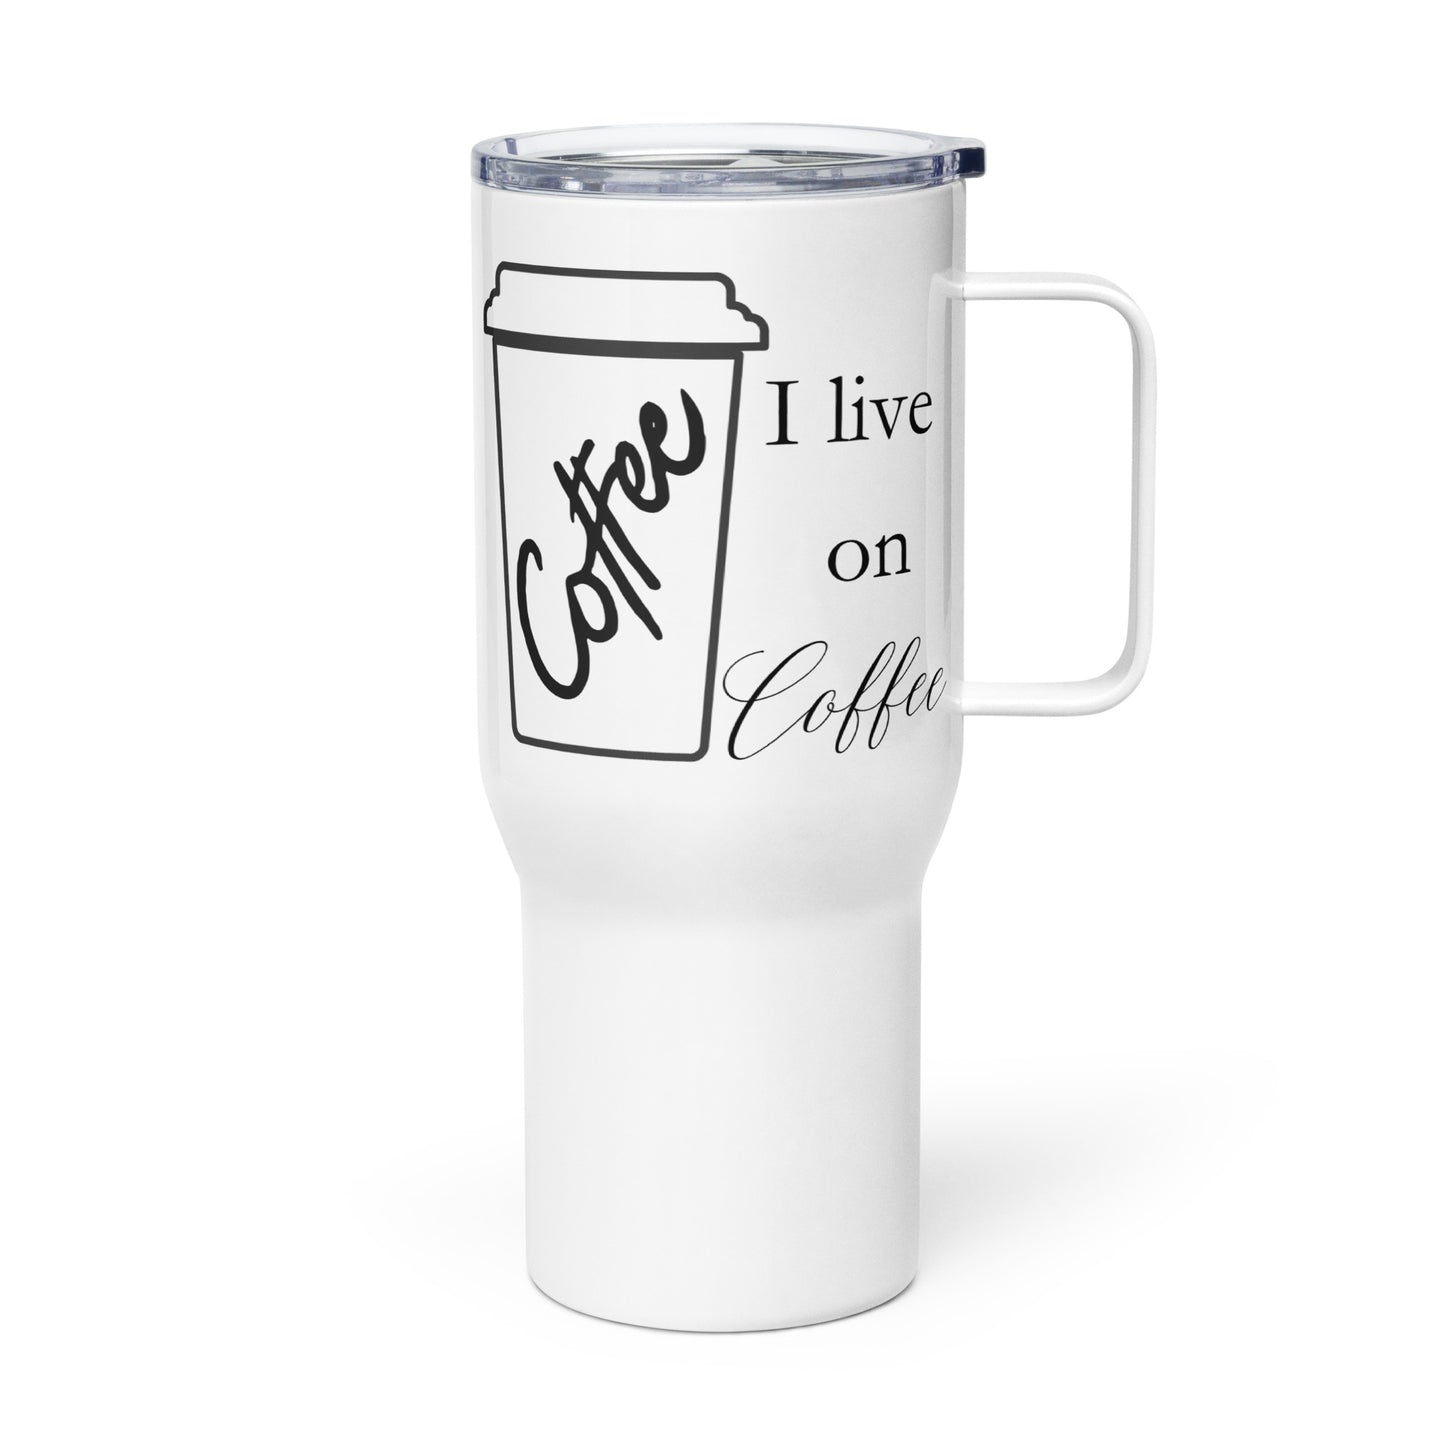 I Live on Coffee Bold Travel mug with a handle